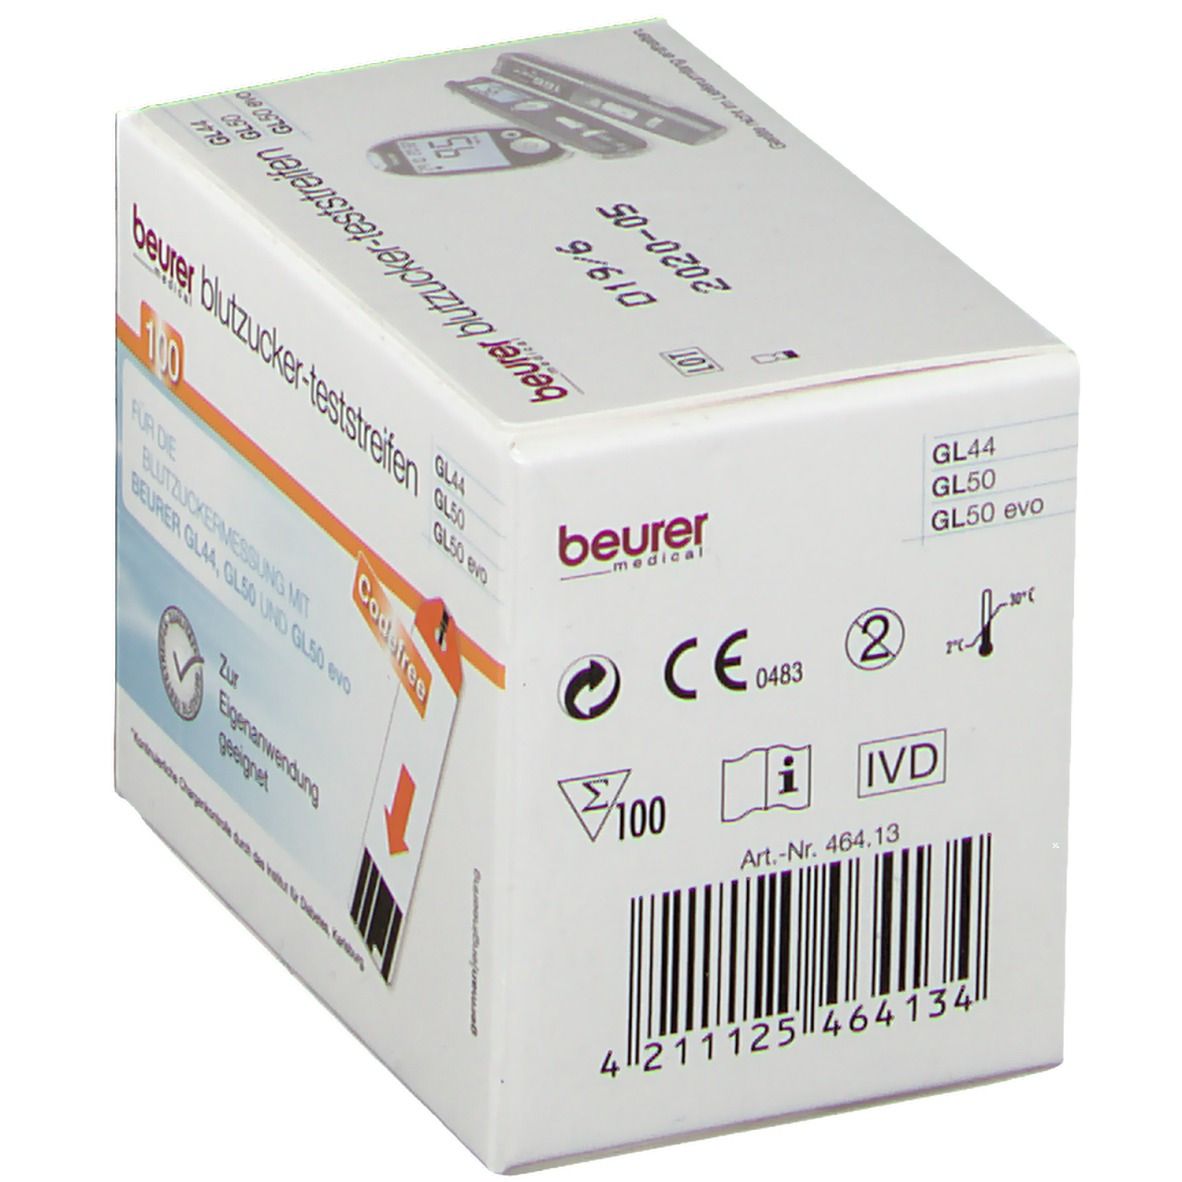 beurer Blutzucker Teststreifen GL 44/50